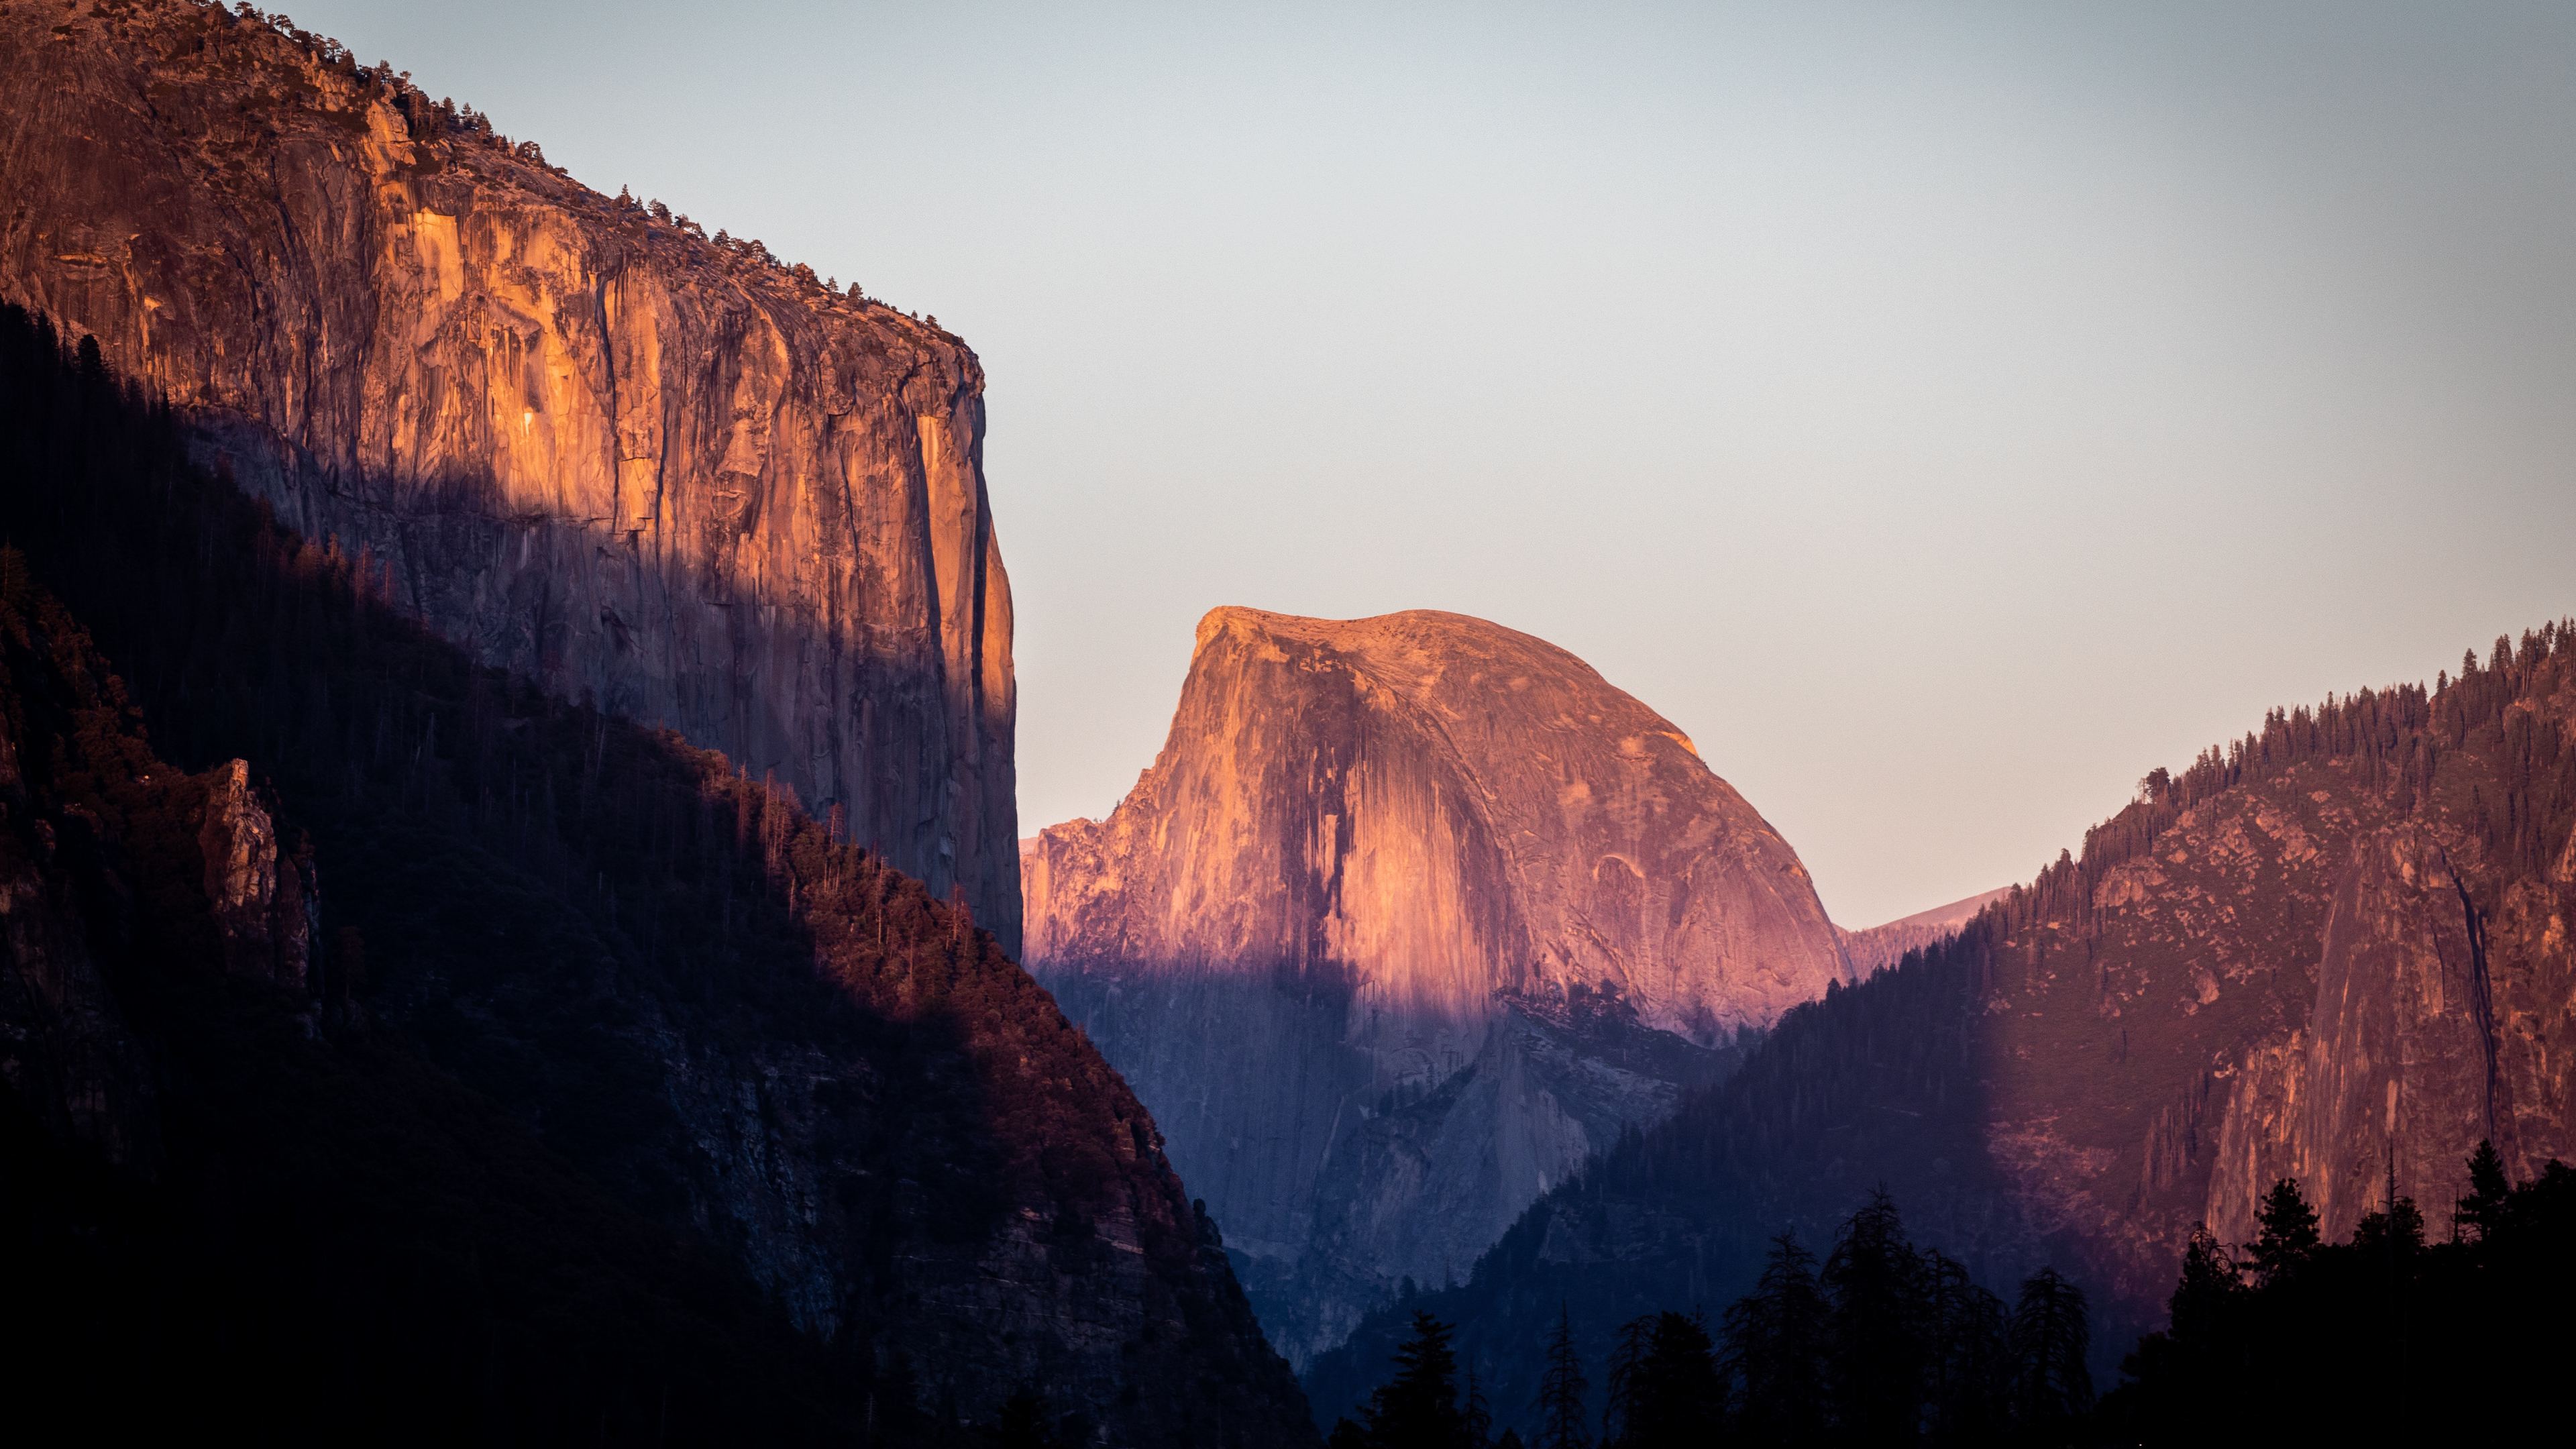 Khám phá hình nền El Captain Yosemite với chất lượng 4K sắc nét. Được thiết kế bởi những nghệ sĩ tài năng, hình nền này sẽ đưa bạn đến trải nghiệm không gian thần tiên trong vòng tay của El Captain. Hãy thả lỏng tâm hồn và ngắm nhìn vẻ đẹp tuyệt vời của thiên nhiên này.